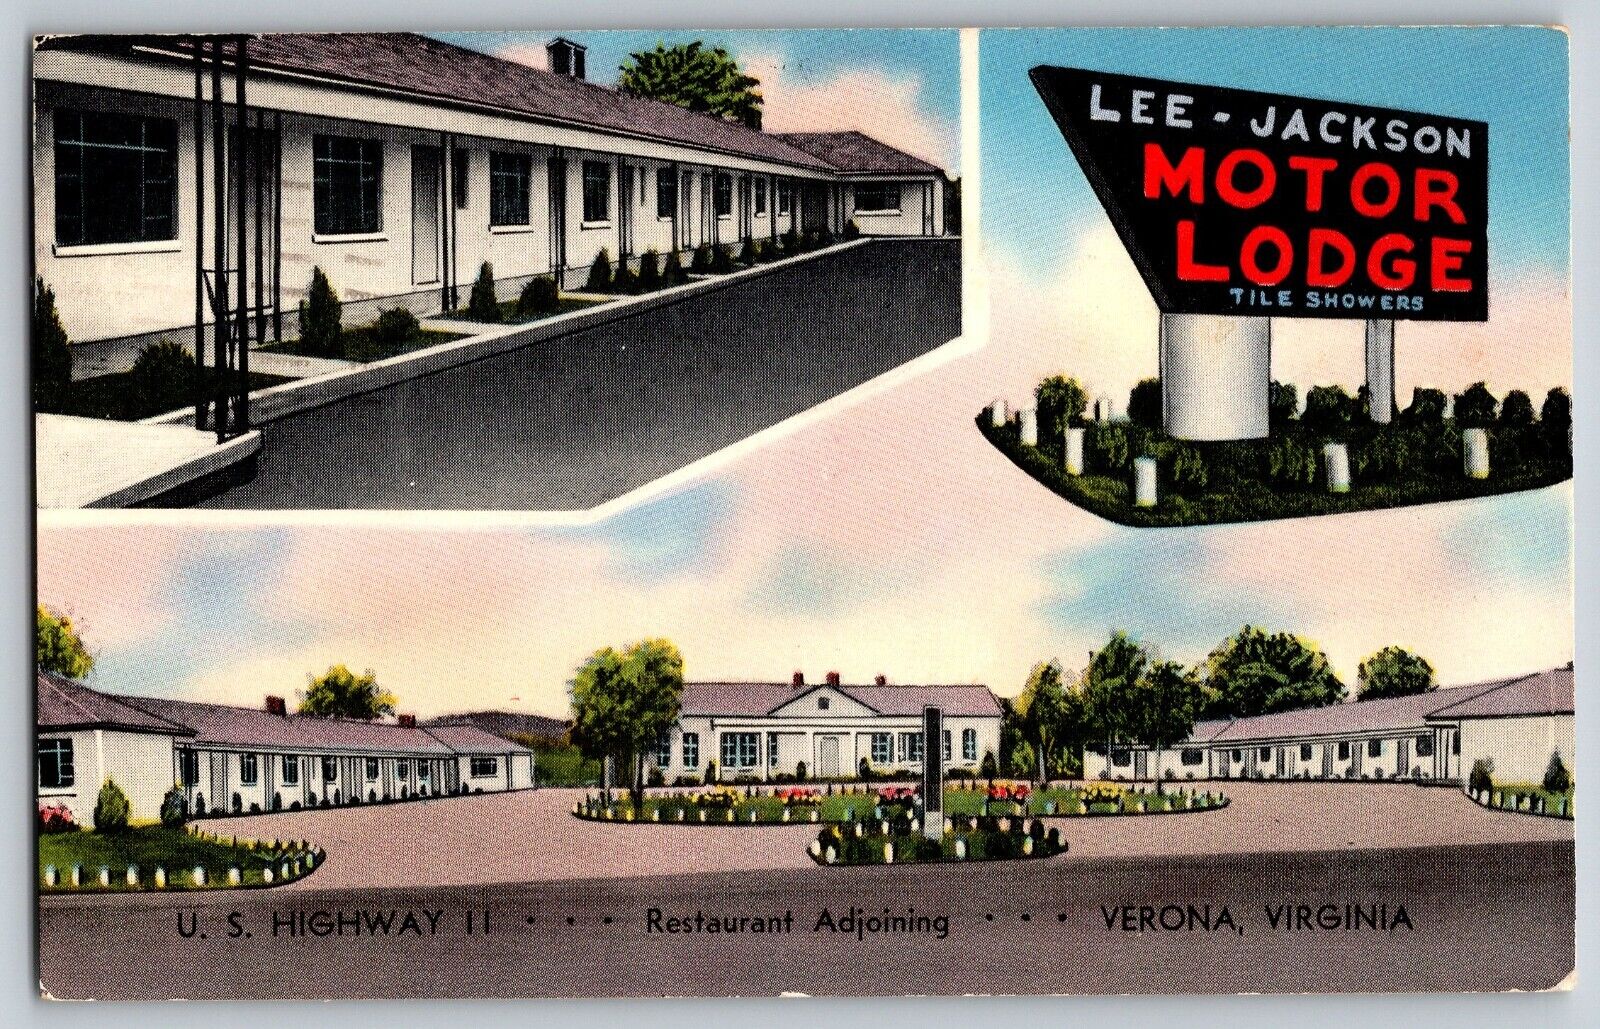 Verona, Virginia - Lee - Jackson Motor Lodge - Vintage Postcard - Posted 1957